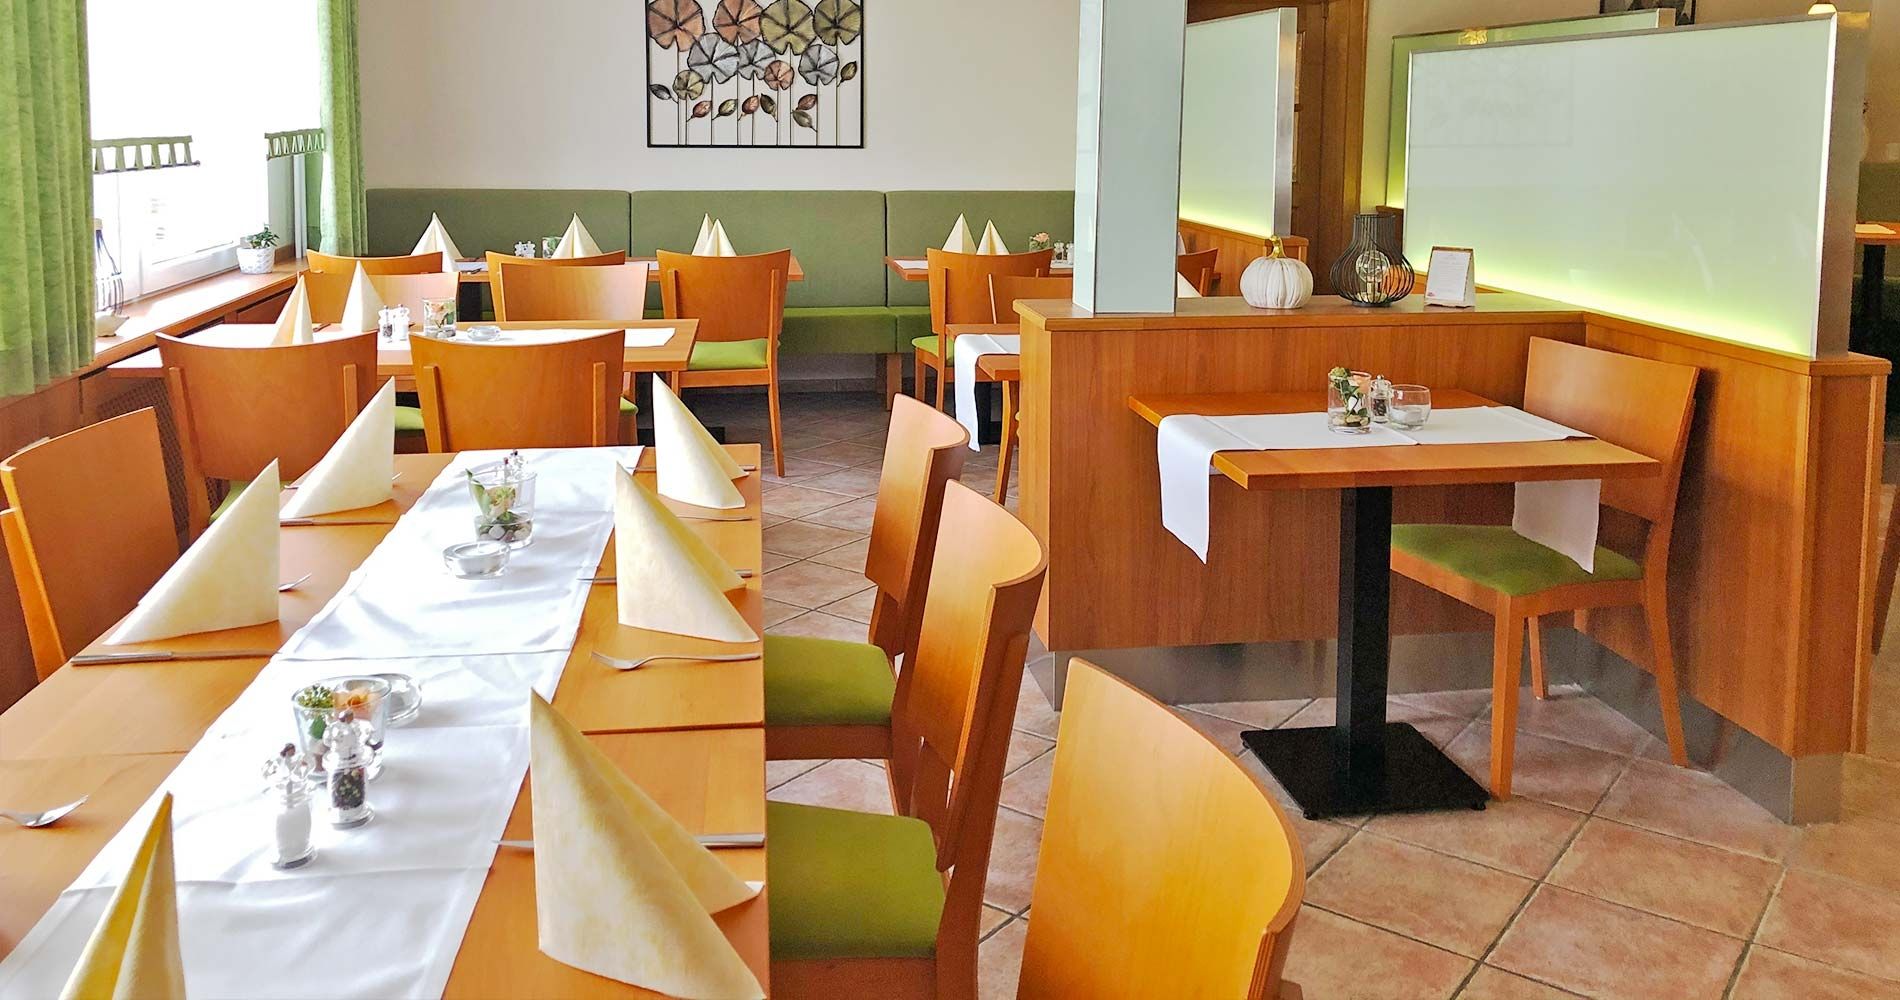 Speisegaststätte Orth - Restaurant Lenderscheid - Speisegaststätte Orth - Restaurant in Lenderscheid